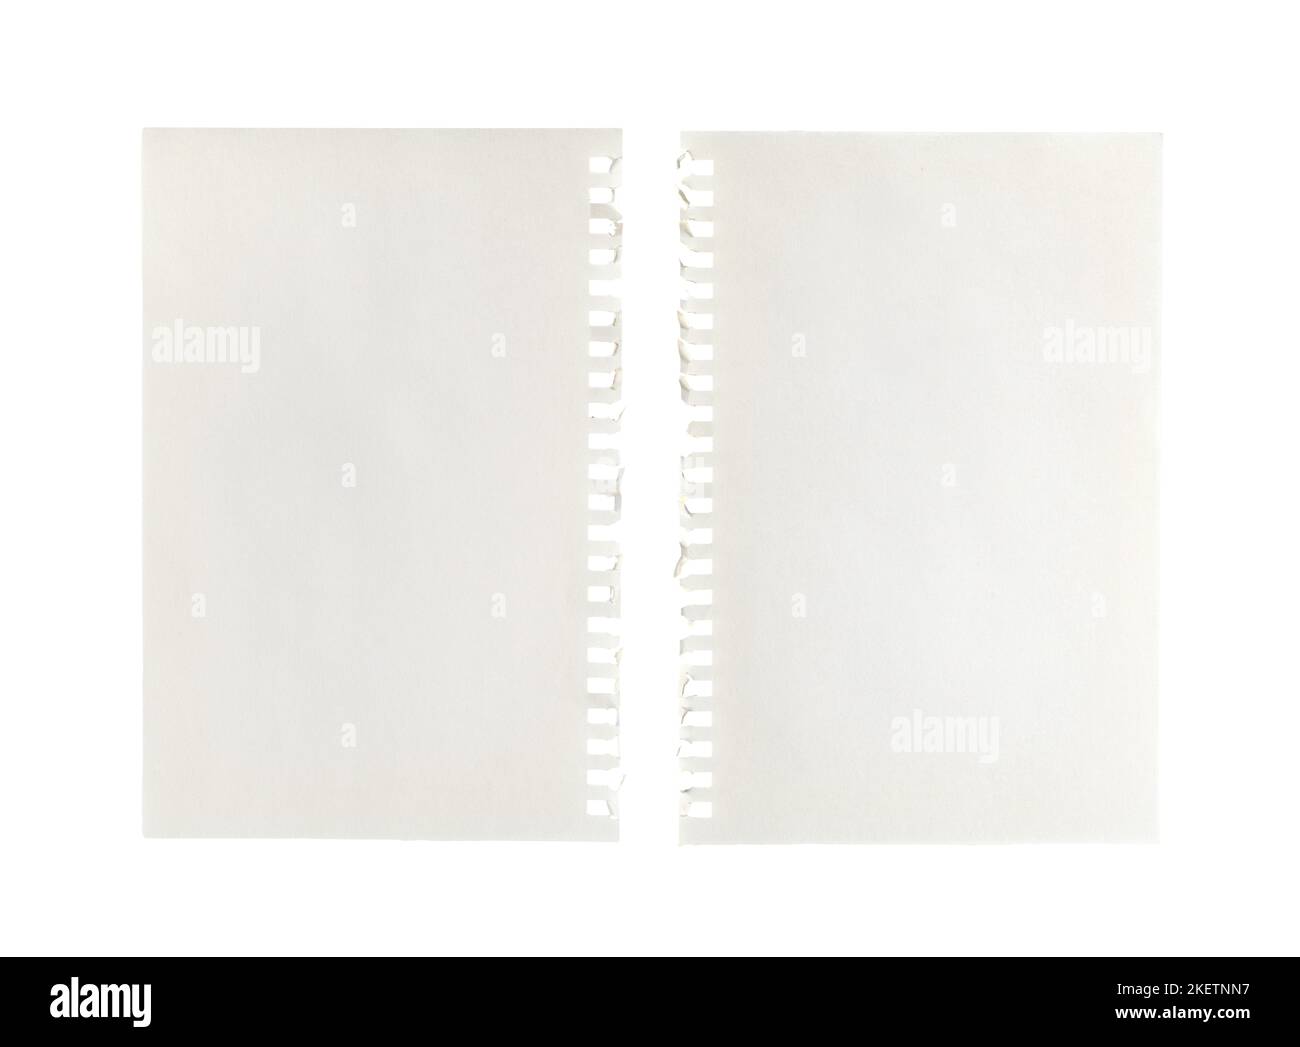 Zwei leere Blätter Papier mit seitlicher Perforation auf einer transparenten Oberfläche Stockfoto